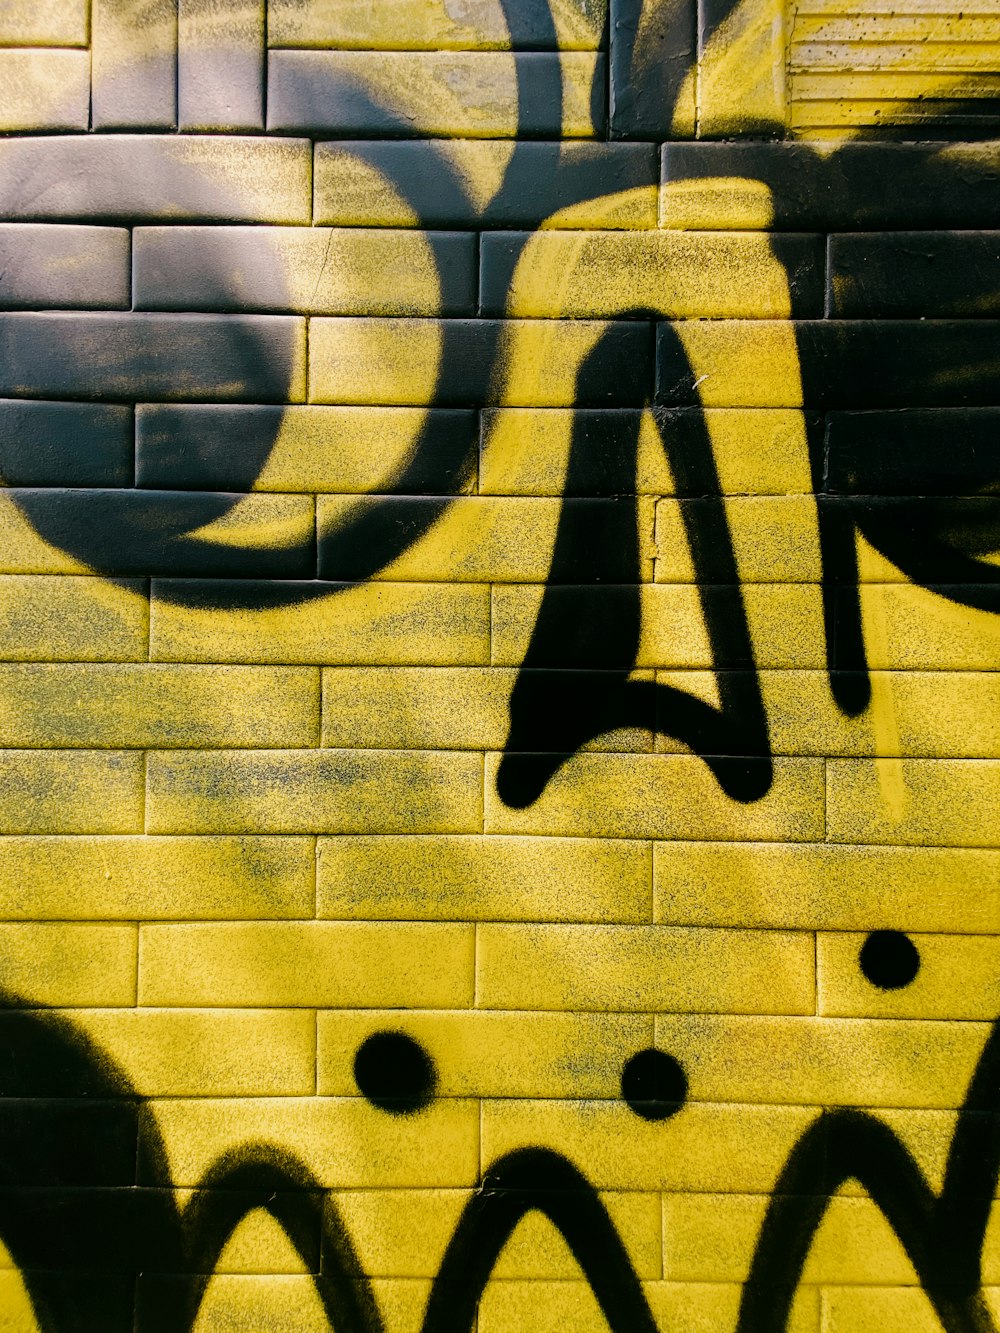 Un muro di mattoni gialli con graffiti neri su di esso